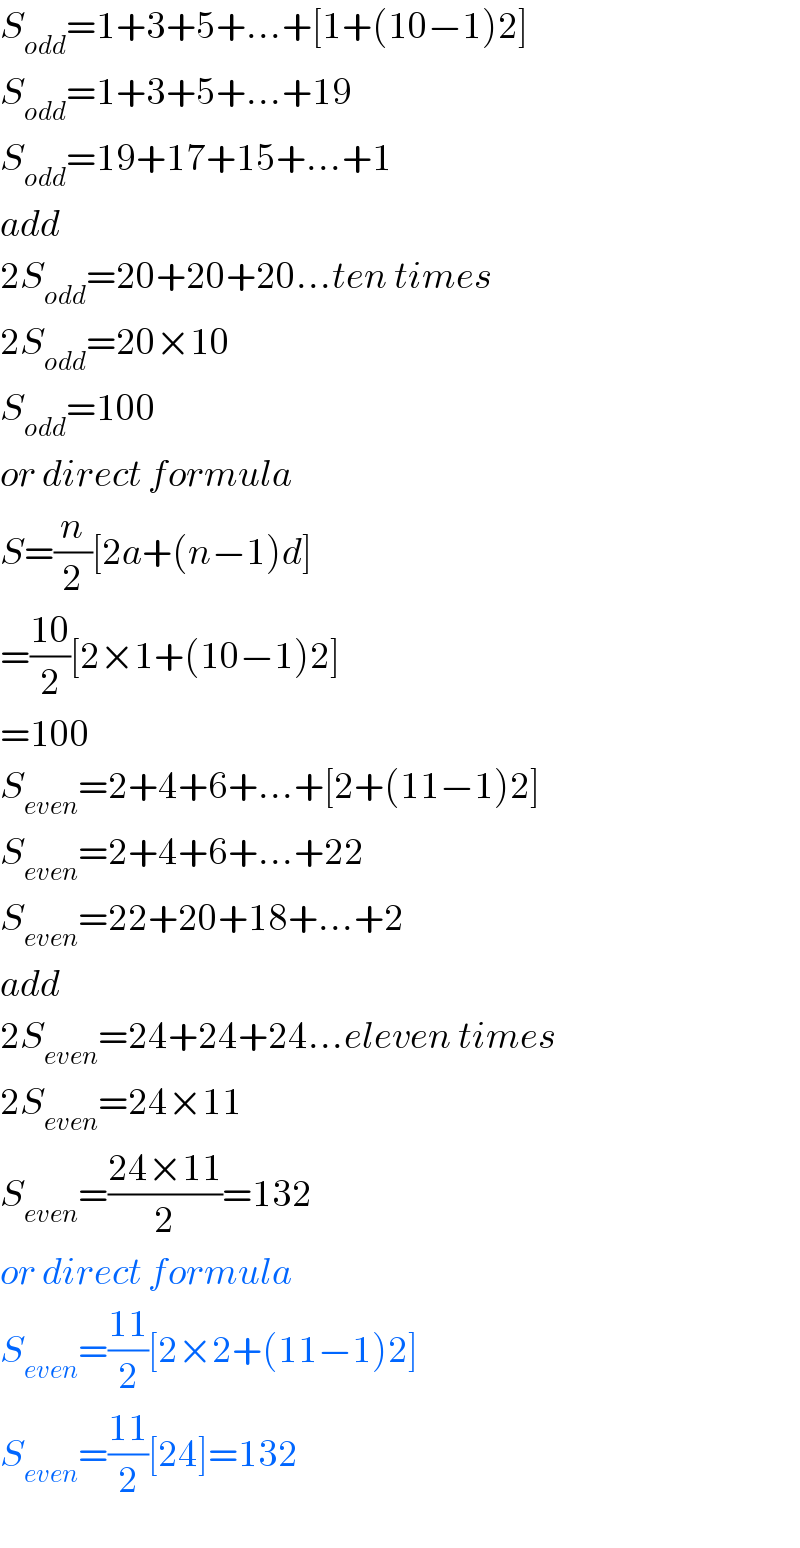 S_(odd) =1+3+5+...+[1+(10−1)2]  S_(odd) =1+3+5+...+19  S_(odd) =19+17+15+...+1  add  2S_(odd) =20+20+20...ten times  2S_(odd) =20×10  S_(odd) =100  or direct formula   S=(n/2)[2a+(n−1)d]  =((10)/2)[2×1+(10−1)2]  =100  S_(even) =2+4+6+...+[2+(11−1)2]  S_(even) =2+4+6+...+22  S_(even) =22+20+18+...+2  add  2S_(even) =24+24+24...eleven times  2S_(even) =24×11  S_(even) =((24×11)/2)=132  or direct formula  S_(even) =((11)/2)[2×2+(11−1)2]  S_(even) =((11)/2)[24]=132  